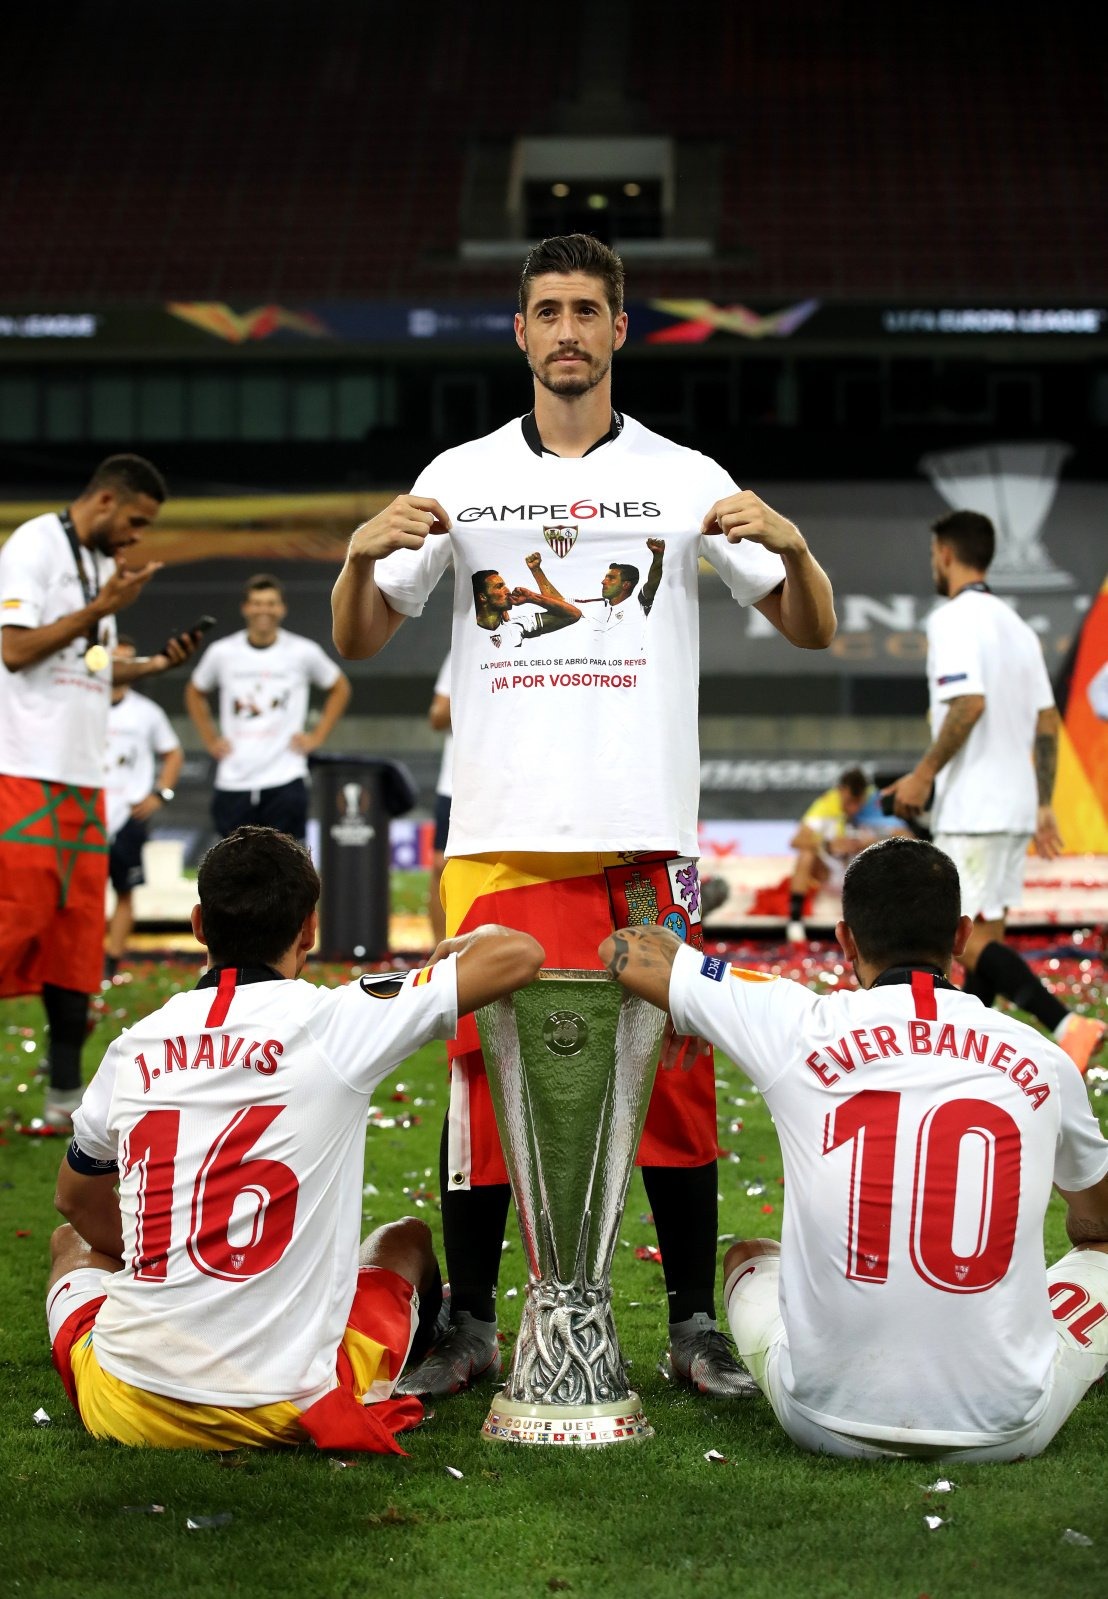 grueso castigo Estación de ferrocarril Reyes y Puerta en la camiseta homenaje del Sevilla FC en Europa League